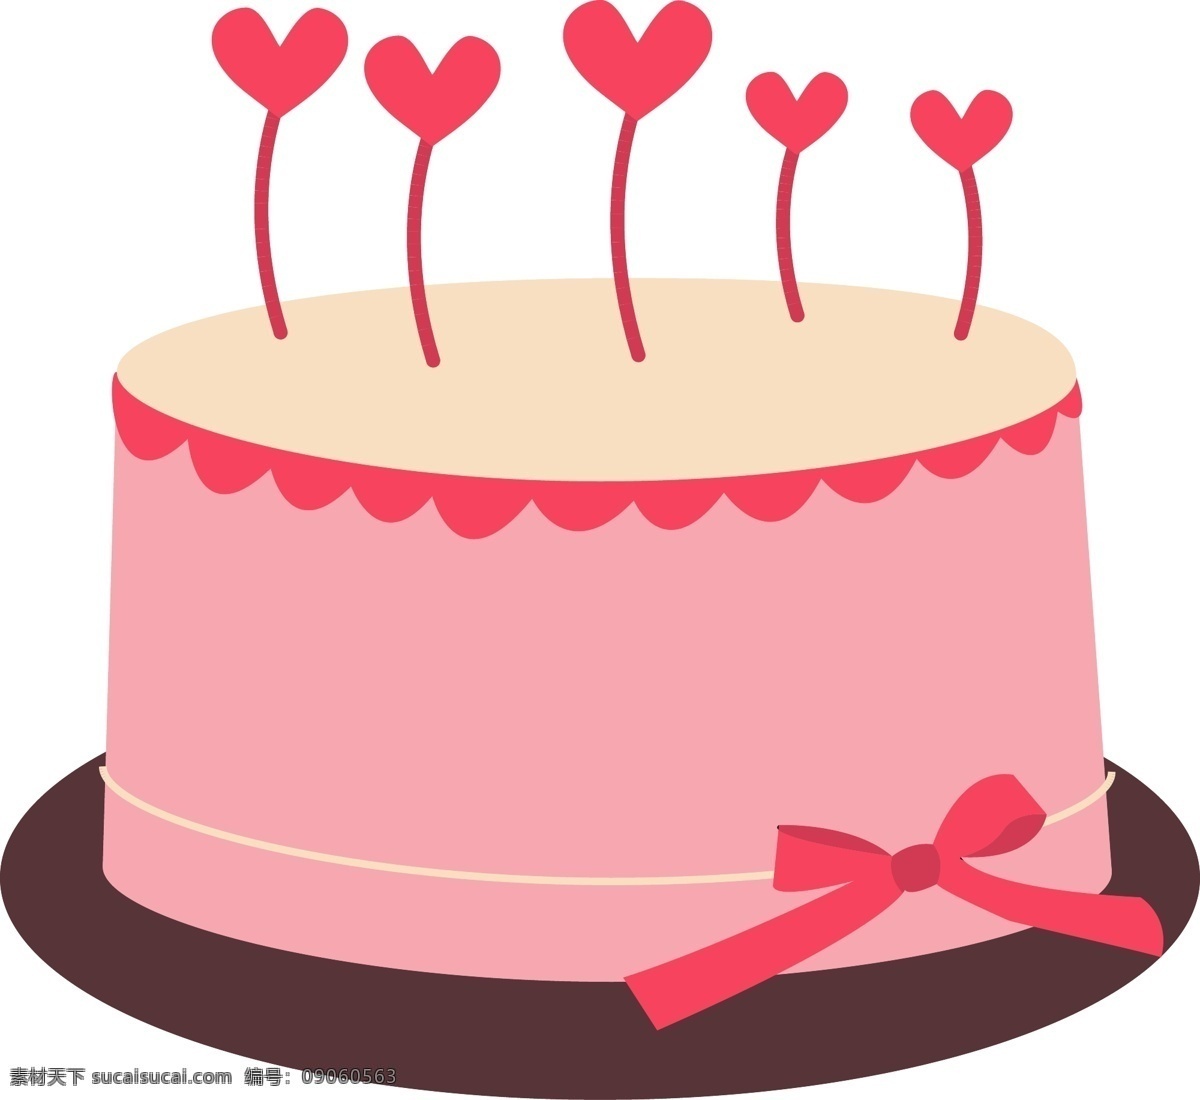 手绘 爱心 蛋糕 矢量图 商用 粉色 蝴蝶结 情人节礼物 创意